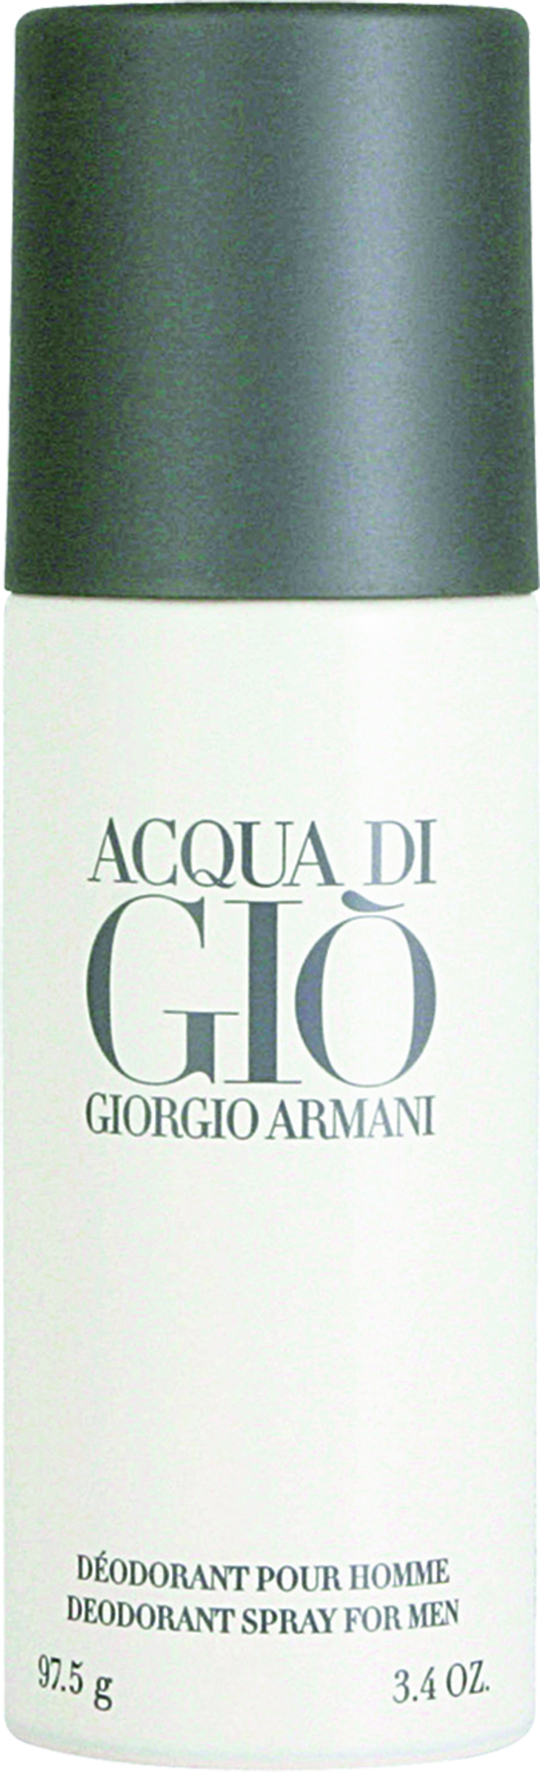 Giorgio Armani Acqua di Gio 150ml